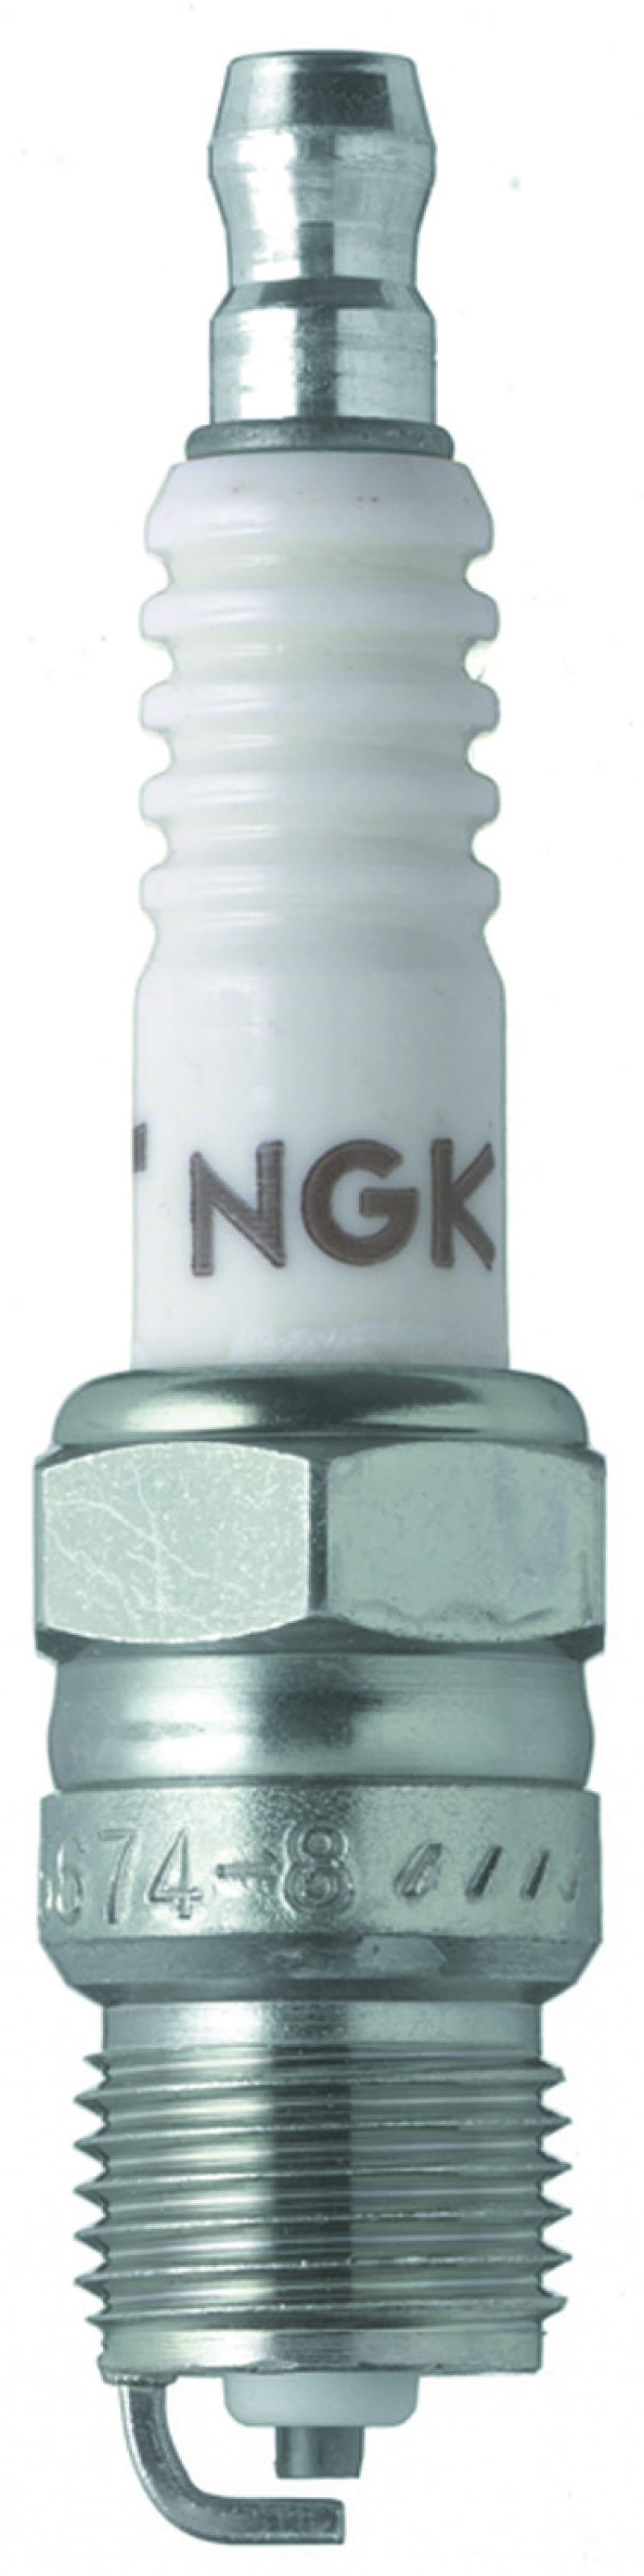 NGK Racing Spark Plug Box of 4 (R5674-8) - 5657